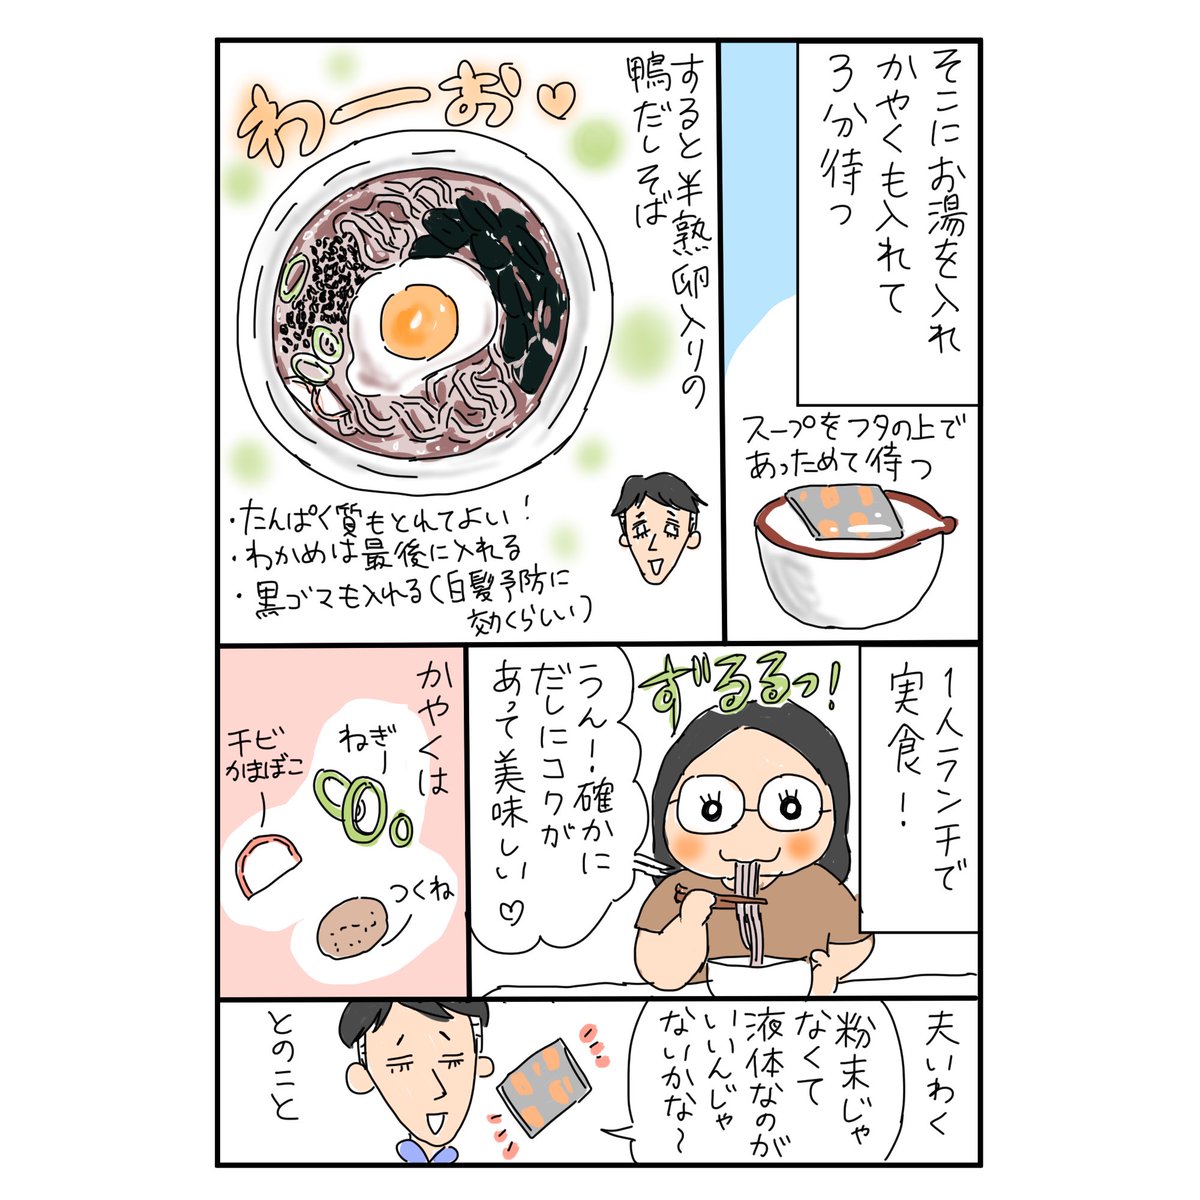 【食べ物コミックエッセイ】
おすすめカップ蕎麦?

#漫画が読めるハッシュタグ 
#コルクラボマンガ専科 